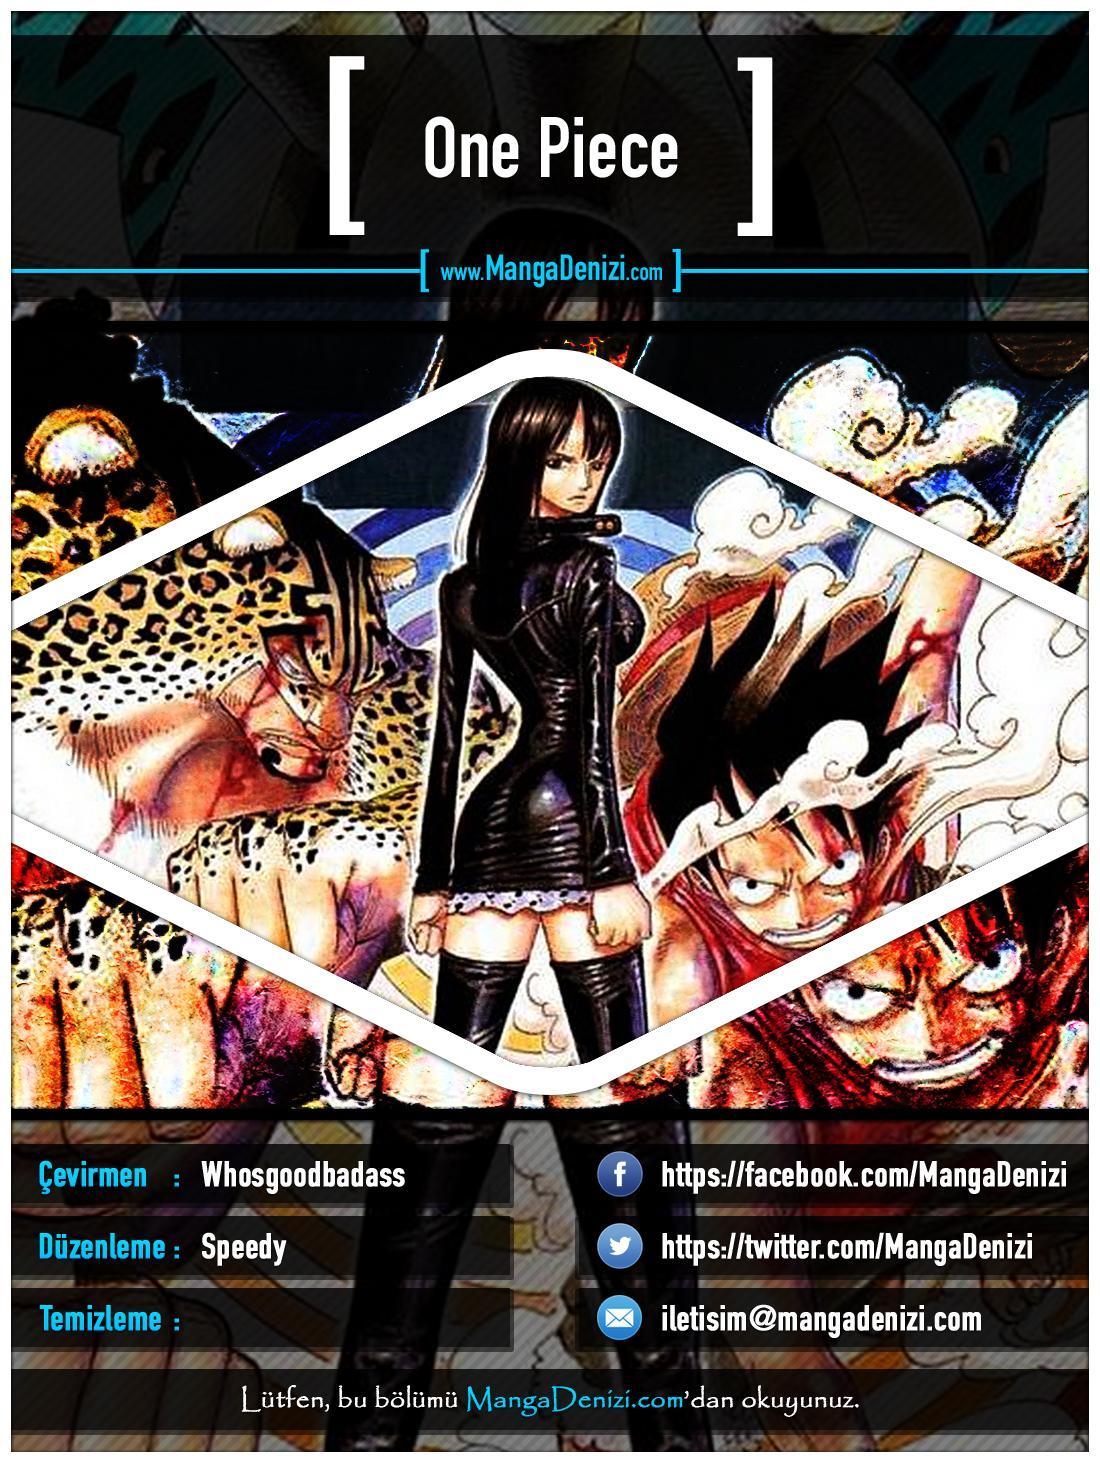 One Piece [Renkli] mangasının 0364 bölümünün 1. sayfasını okuyorsunuz.